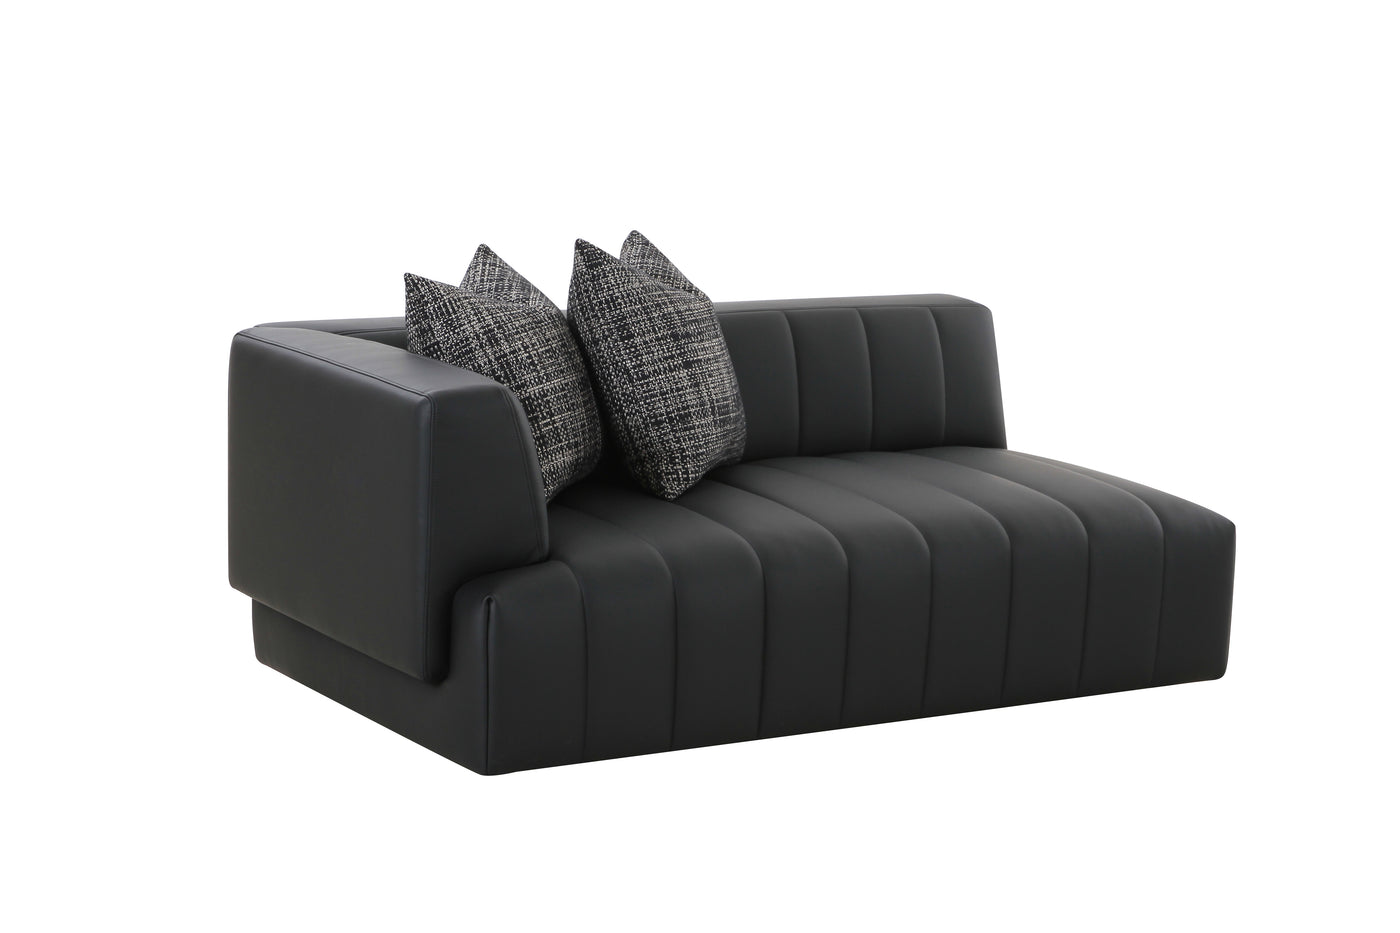 Oberon Sofa - Future Classics Furniture